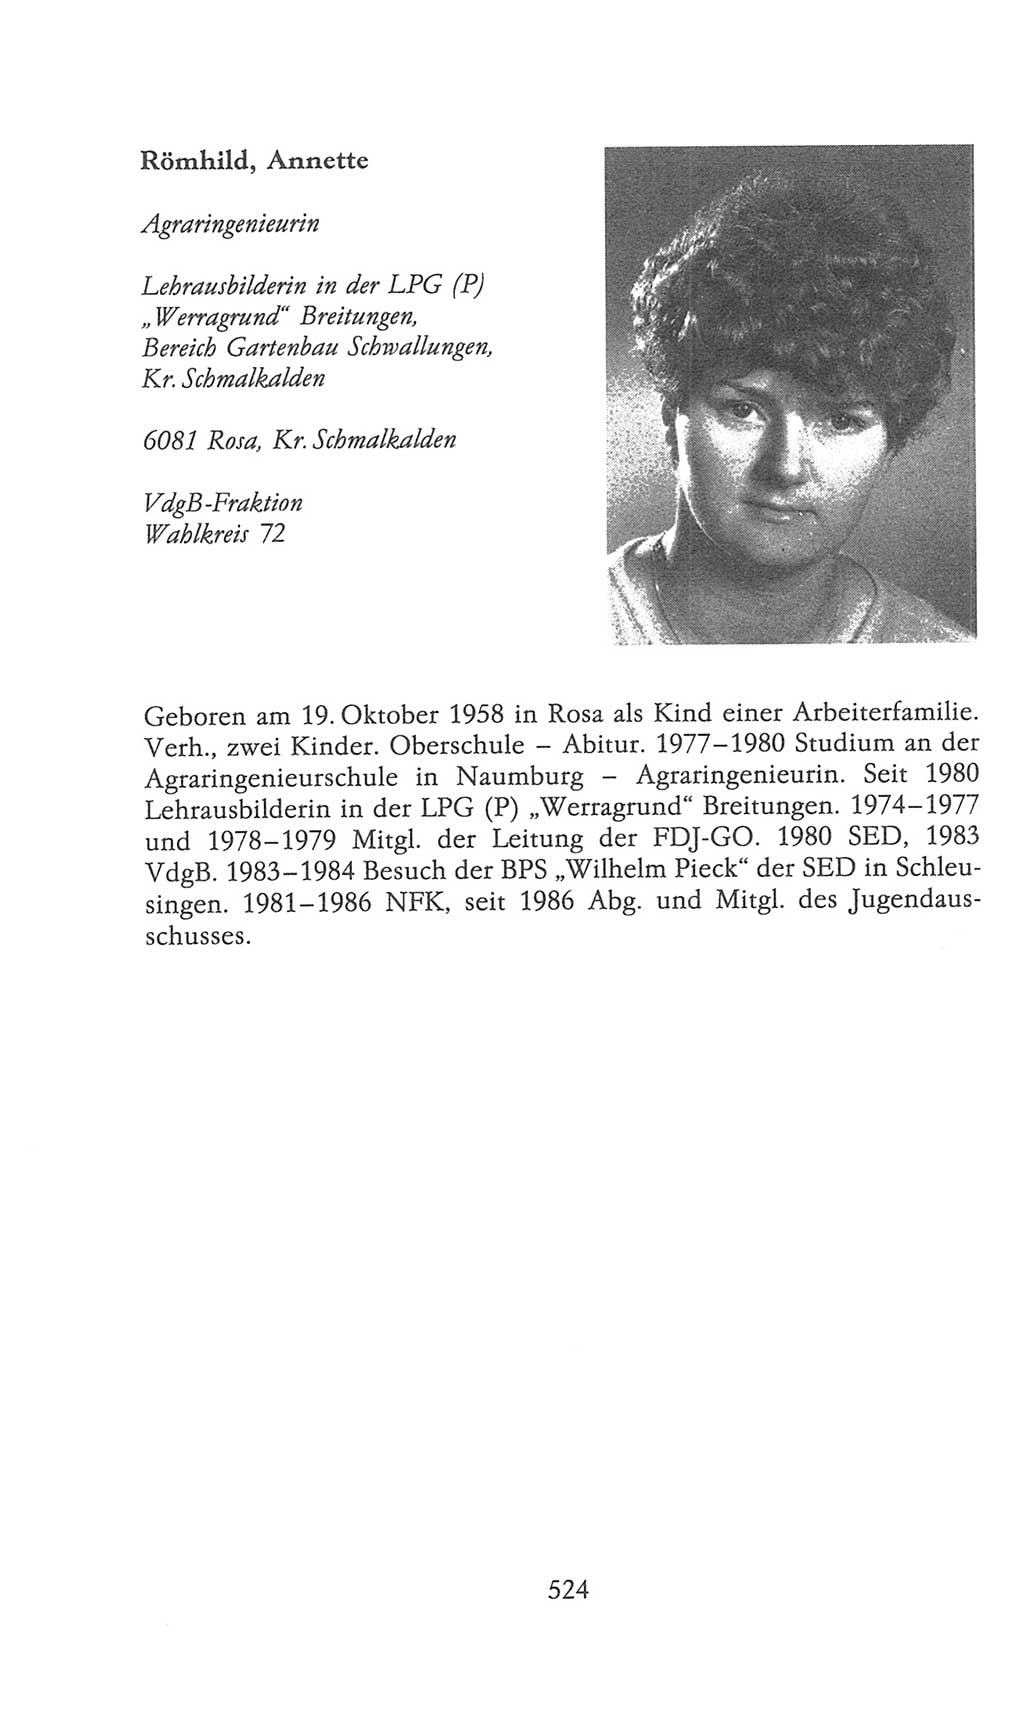 Volkskammer (VK) der Deutschen Demokratischen Republik (DDR), 9. Wahlperiode 1986-1990, Seite 524 (VK. DDR 9. WP. 1986-1990, S. 524)